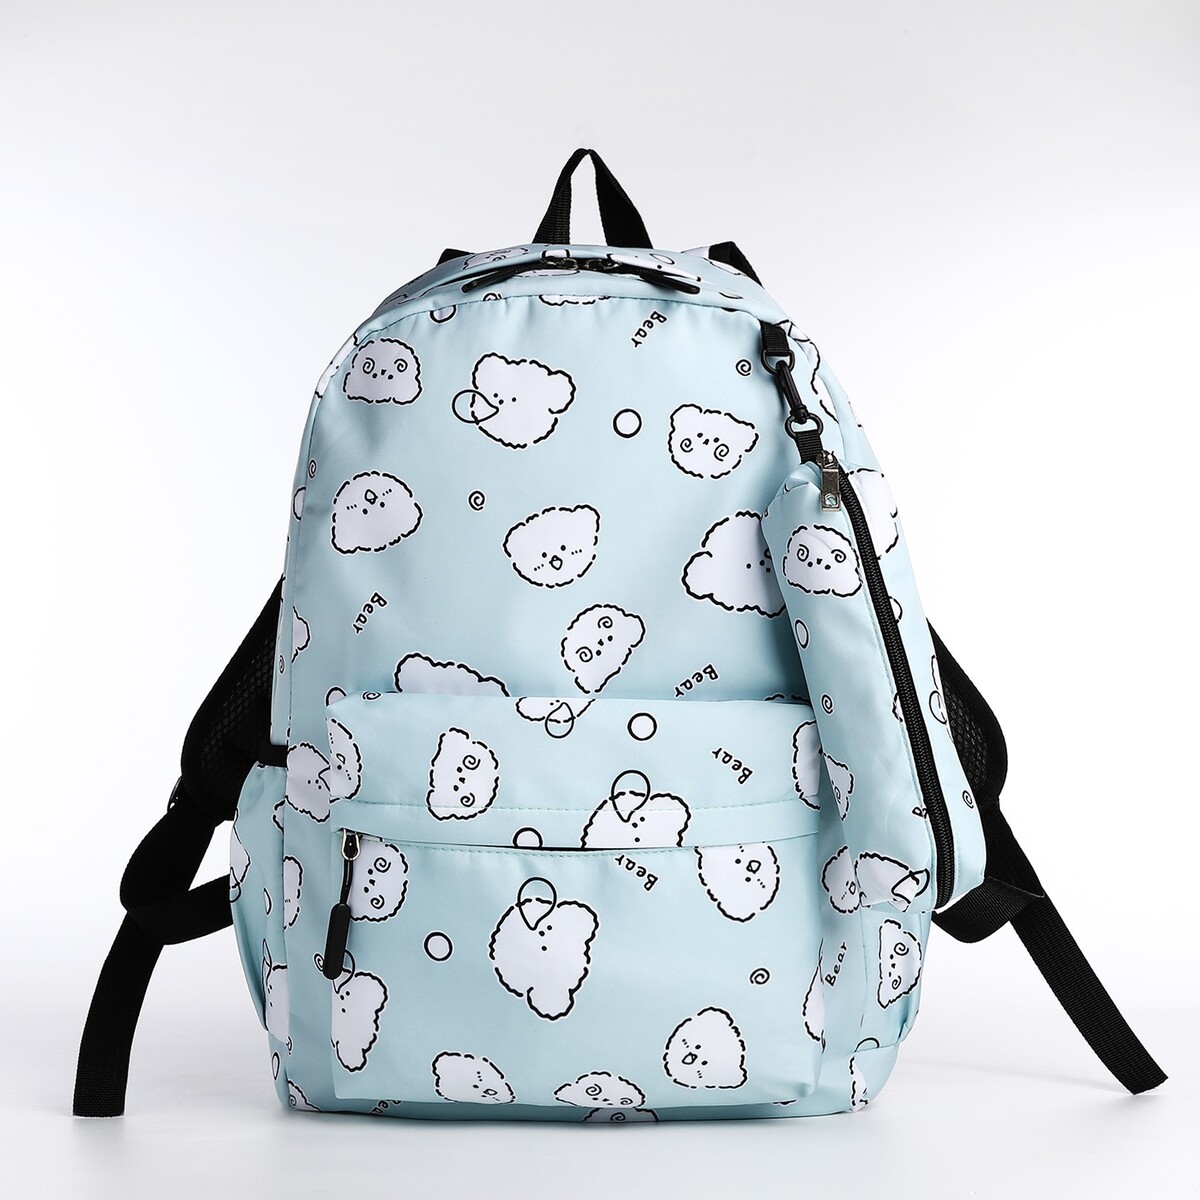 Набор рюкзак школьный из текстиля на молнии, 3 кармана, пенал, цвет бирюзовый рюкзак детский на молнии 3 наружных кармана бирюзовый